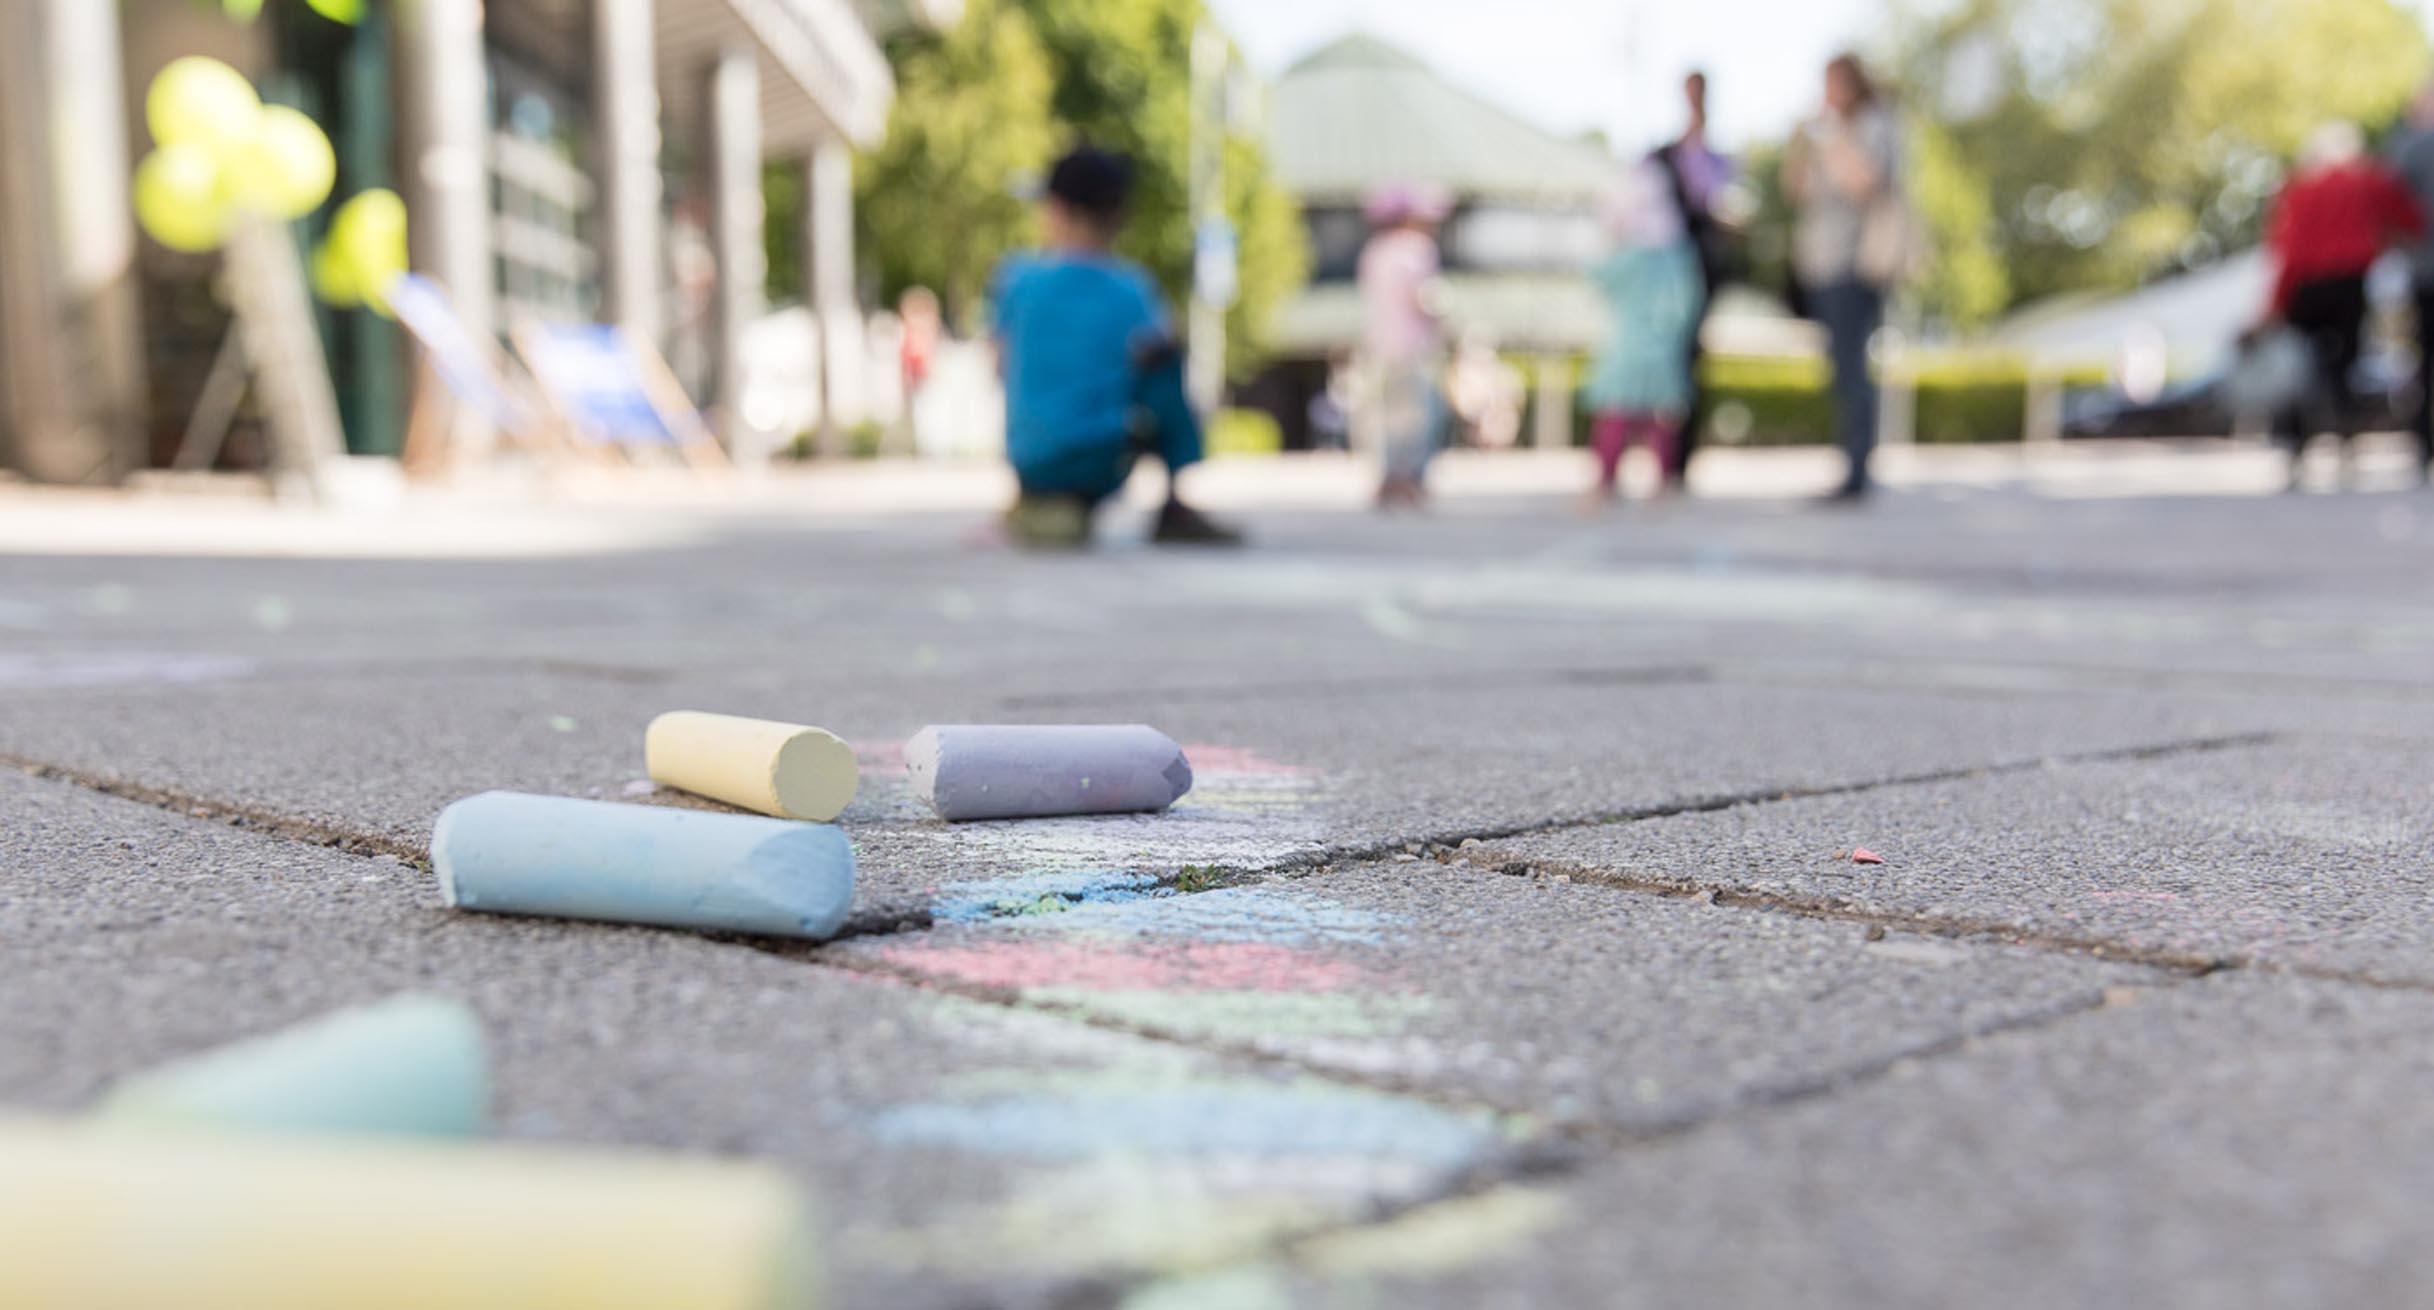 Kinder malen mit Kreide auf der Straße.']